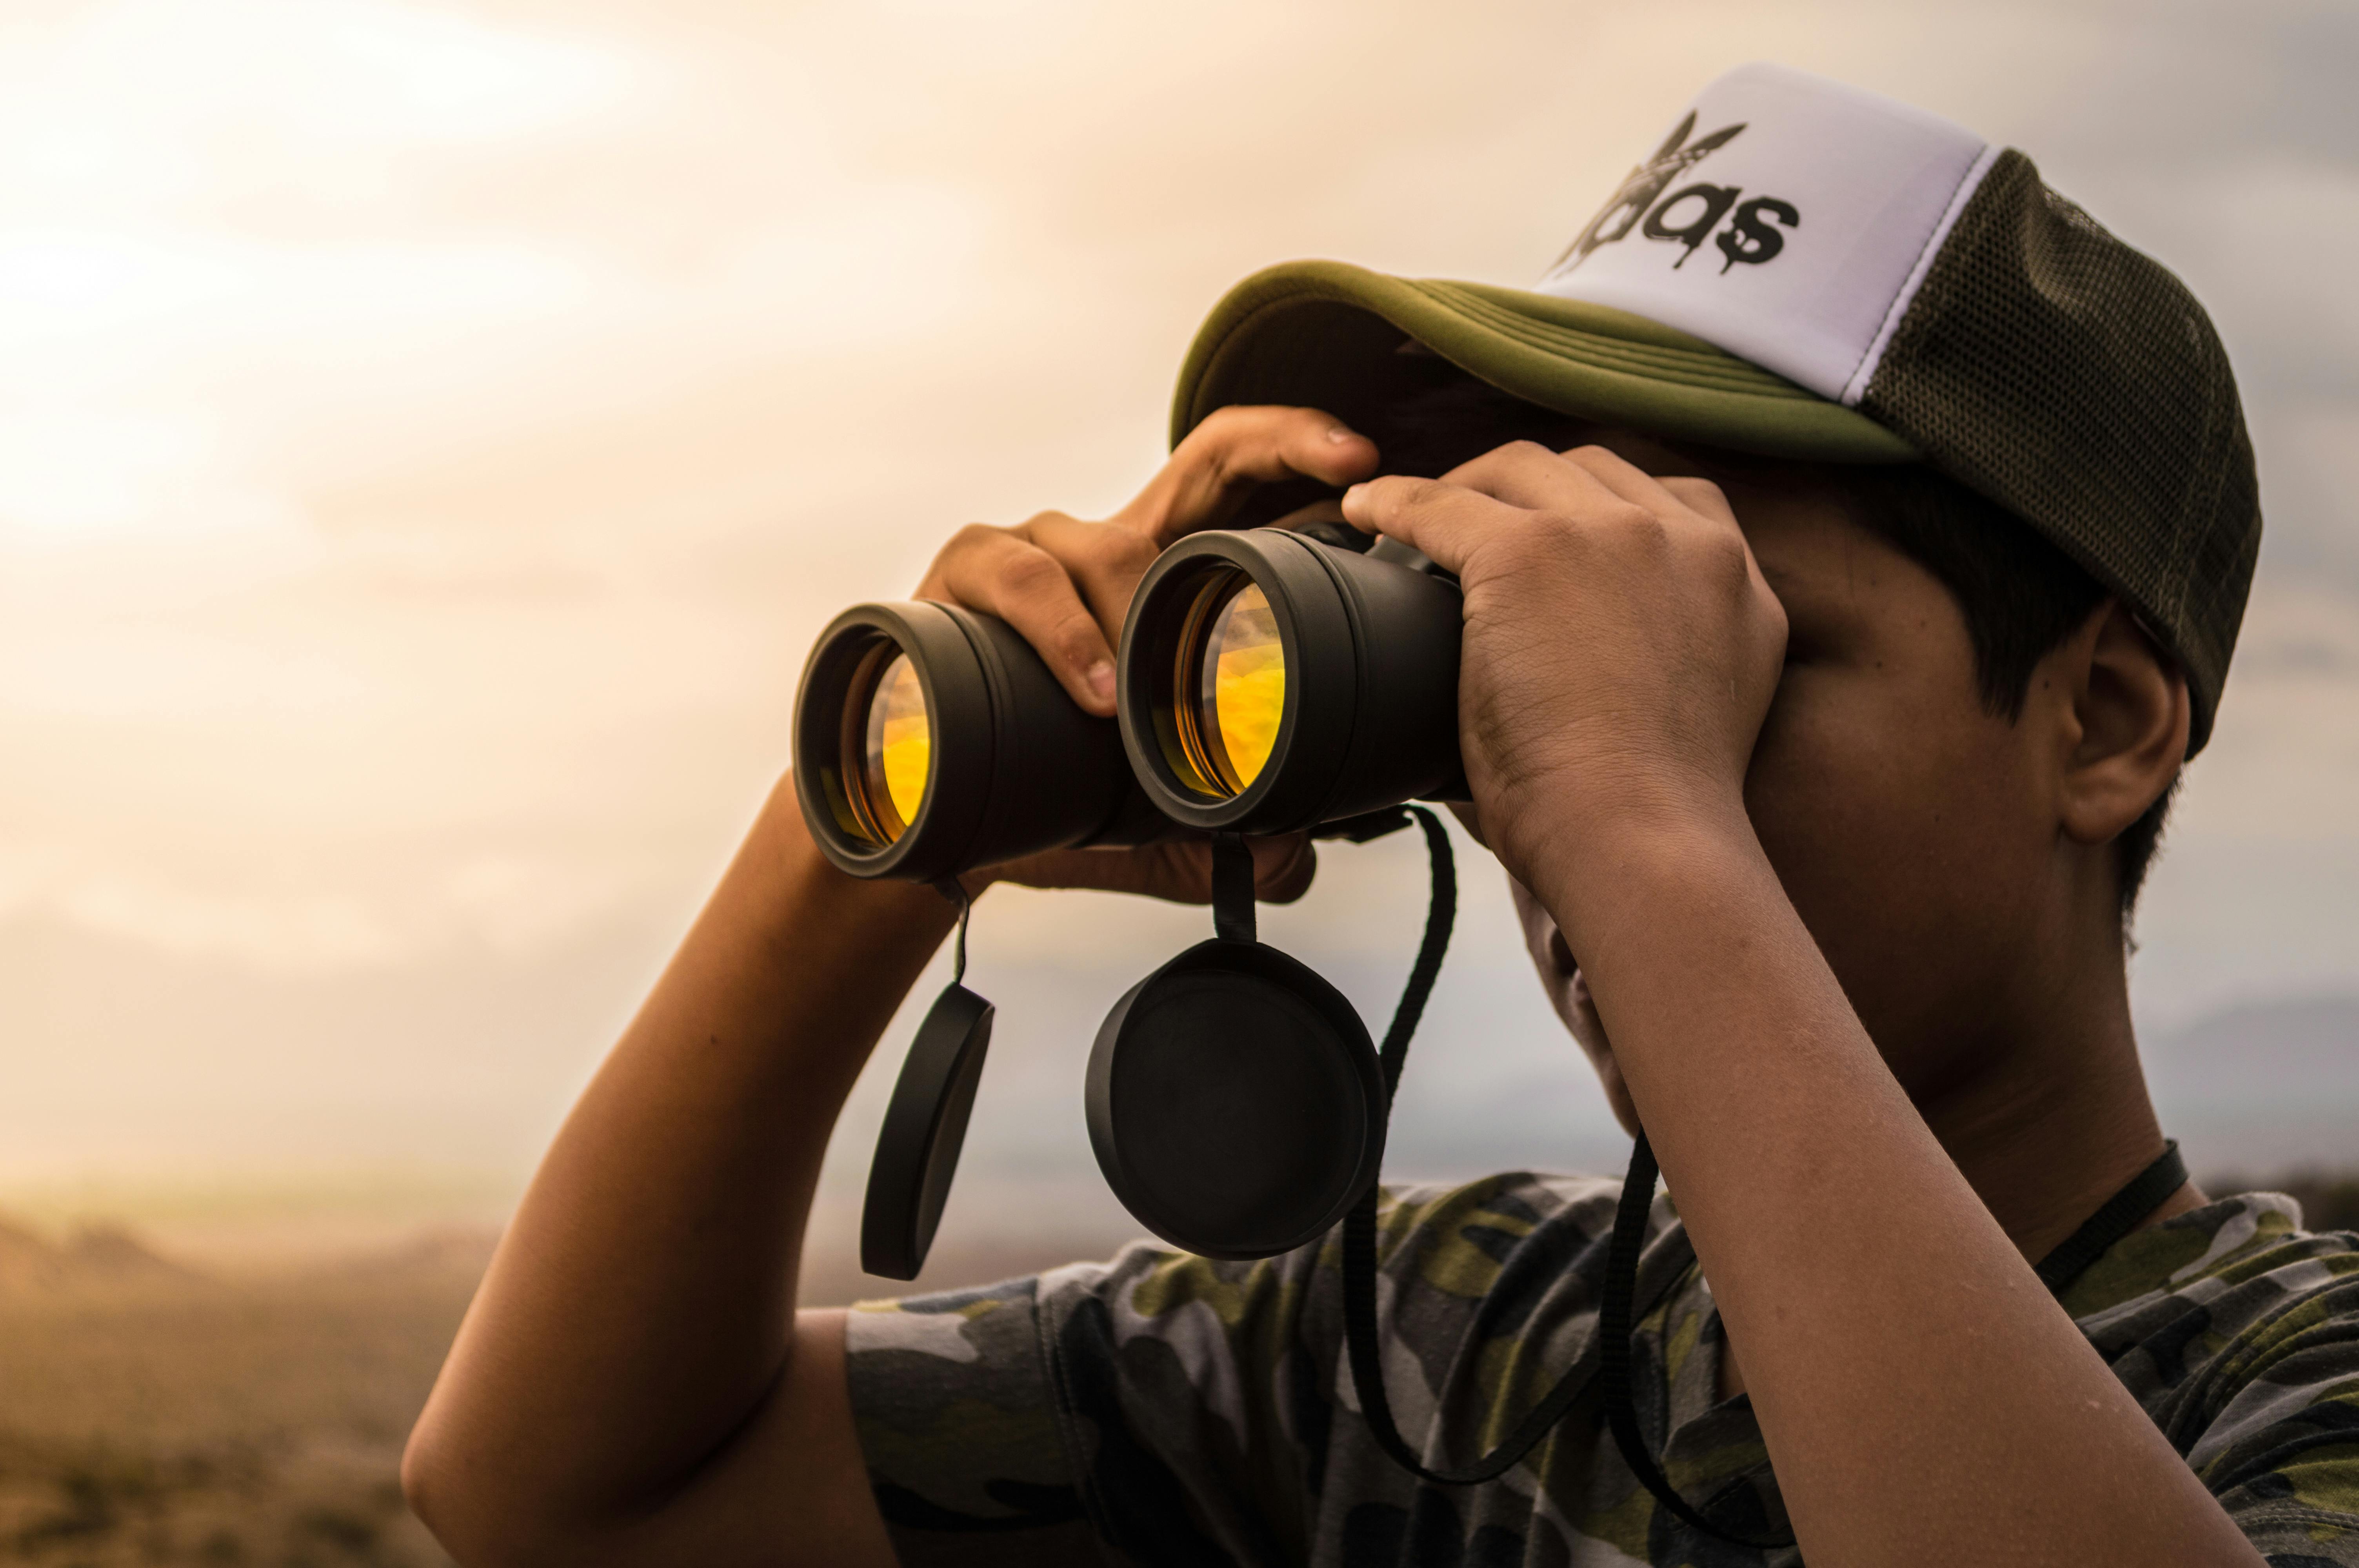 Man Looking in Binoculars during Sunset · Free Stock Photo